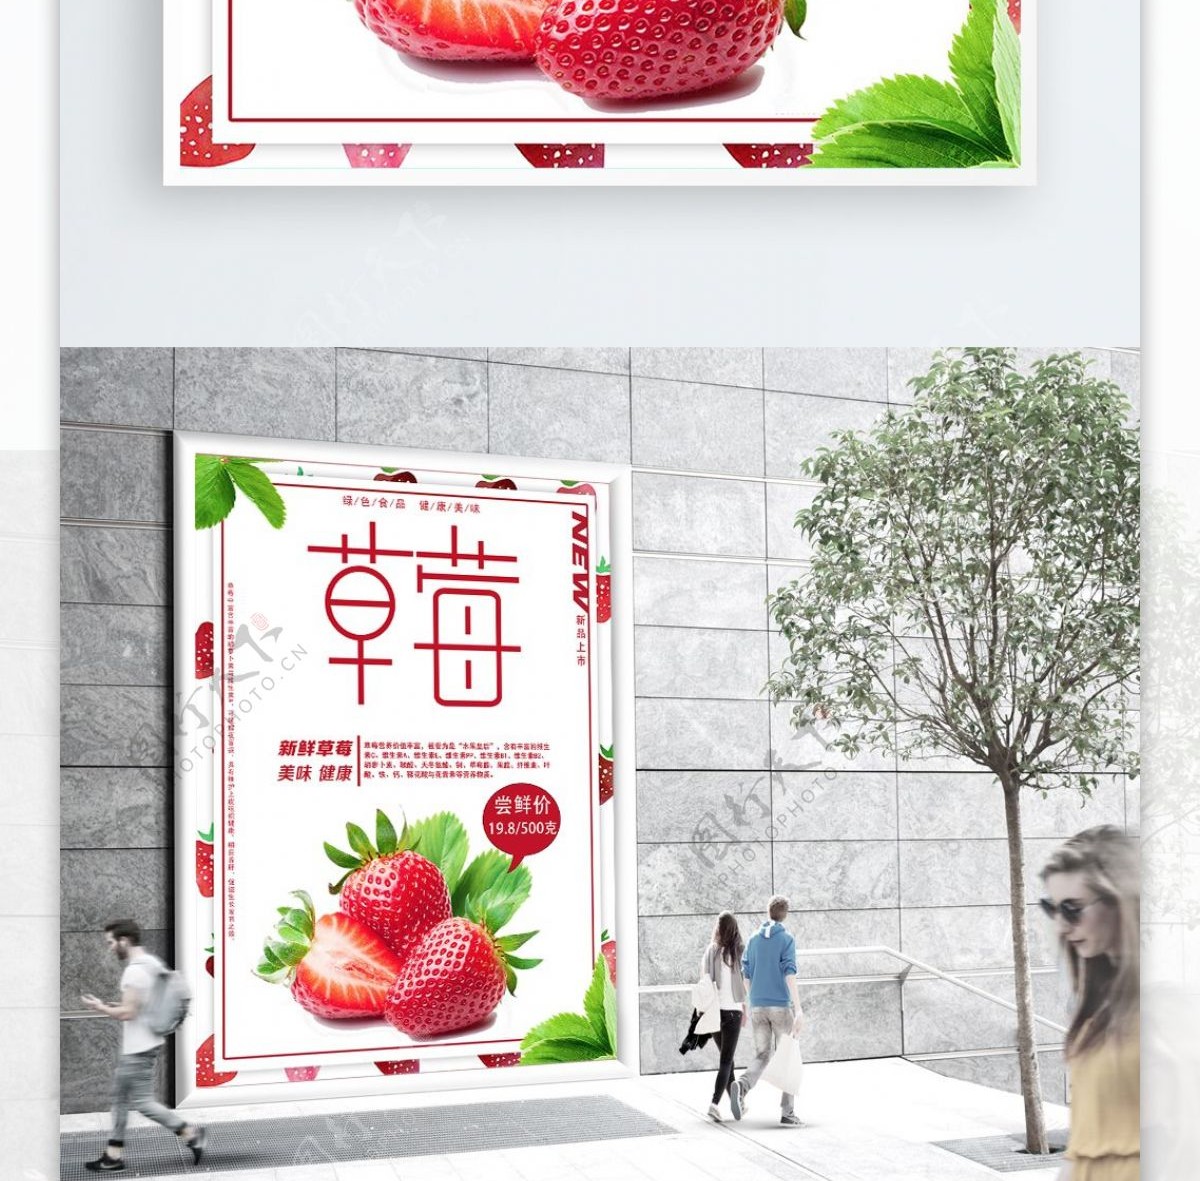 简约大气新鲜水果草莓海报